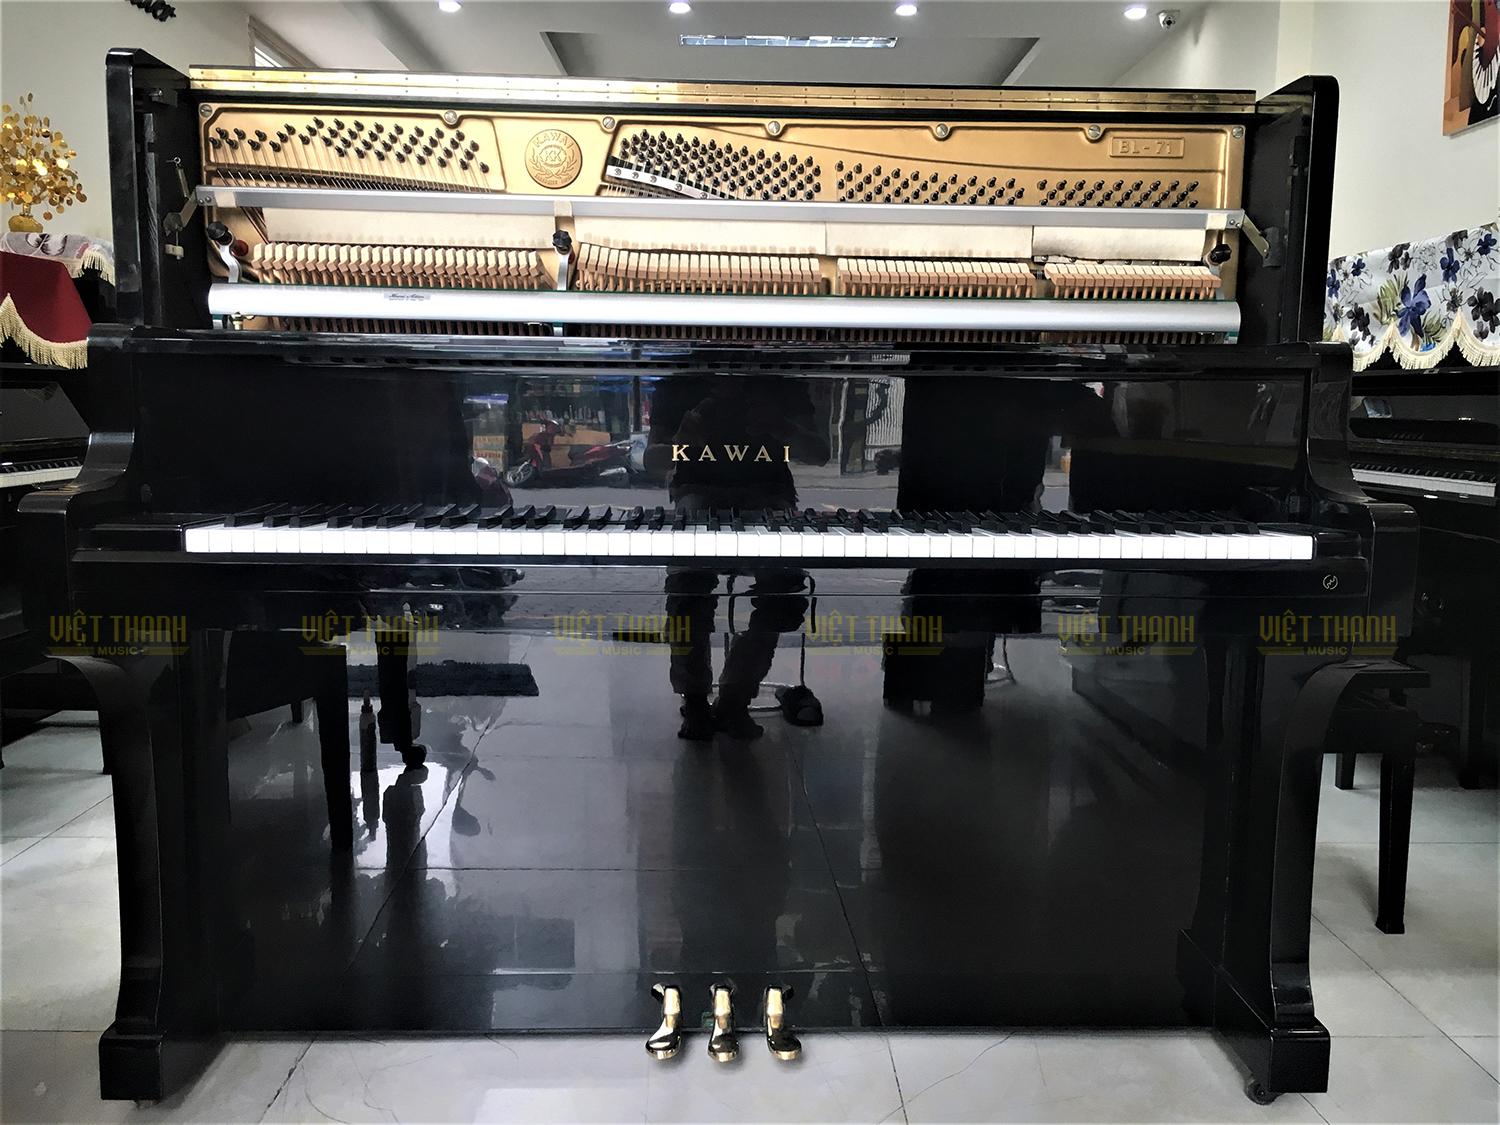 Đàn piano Kawai BL-71 bộ máy đúng chuẩn Kawai Nhật Bản